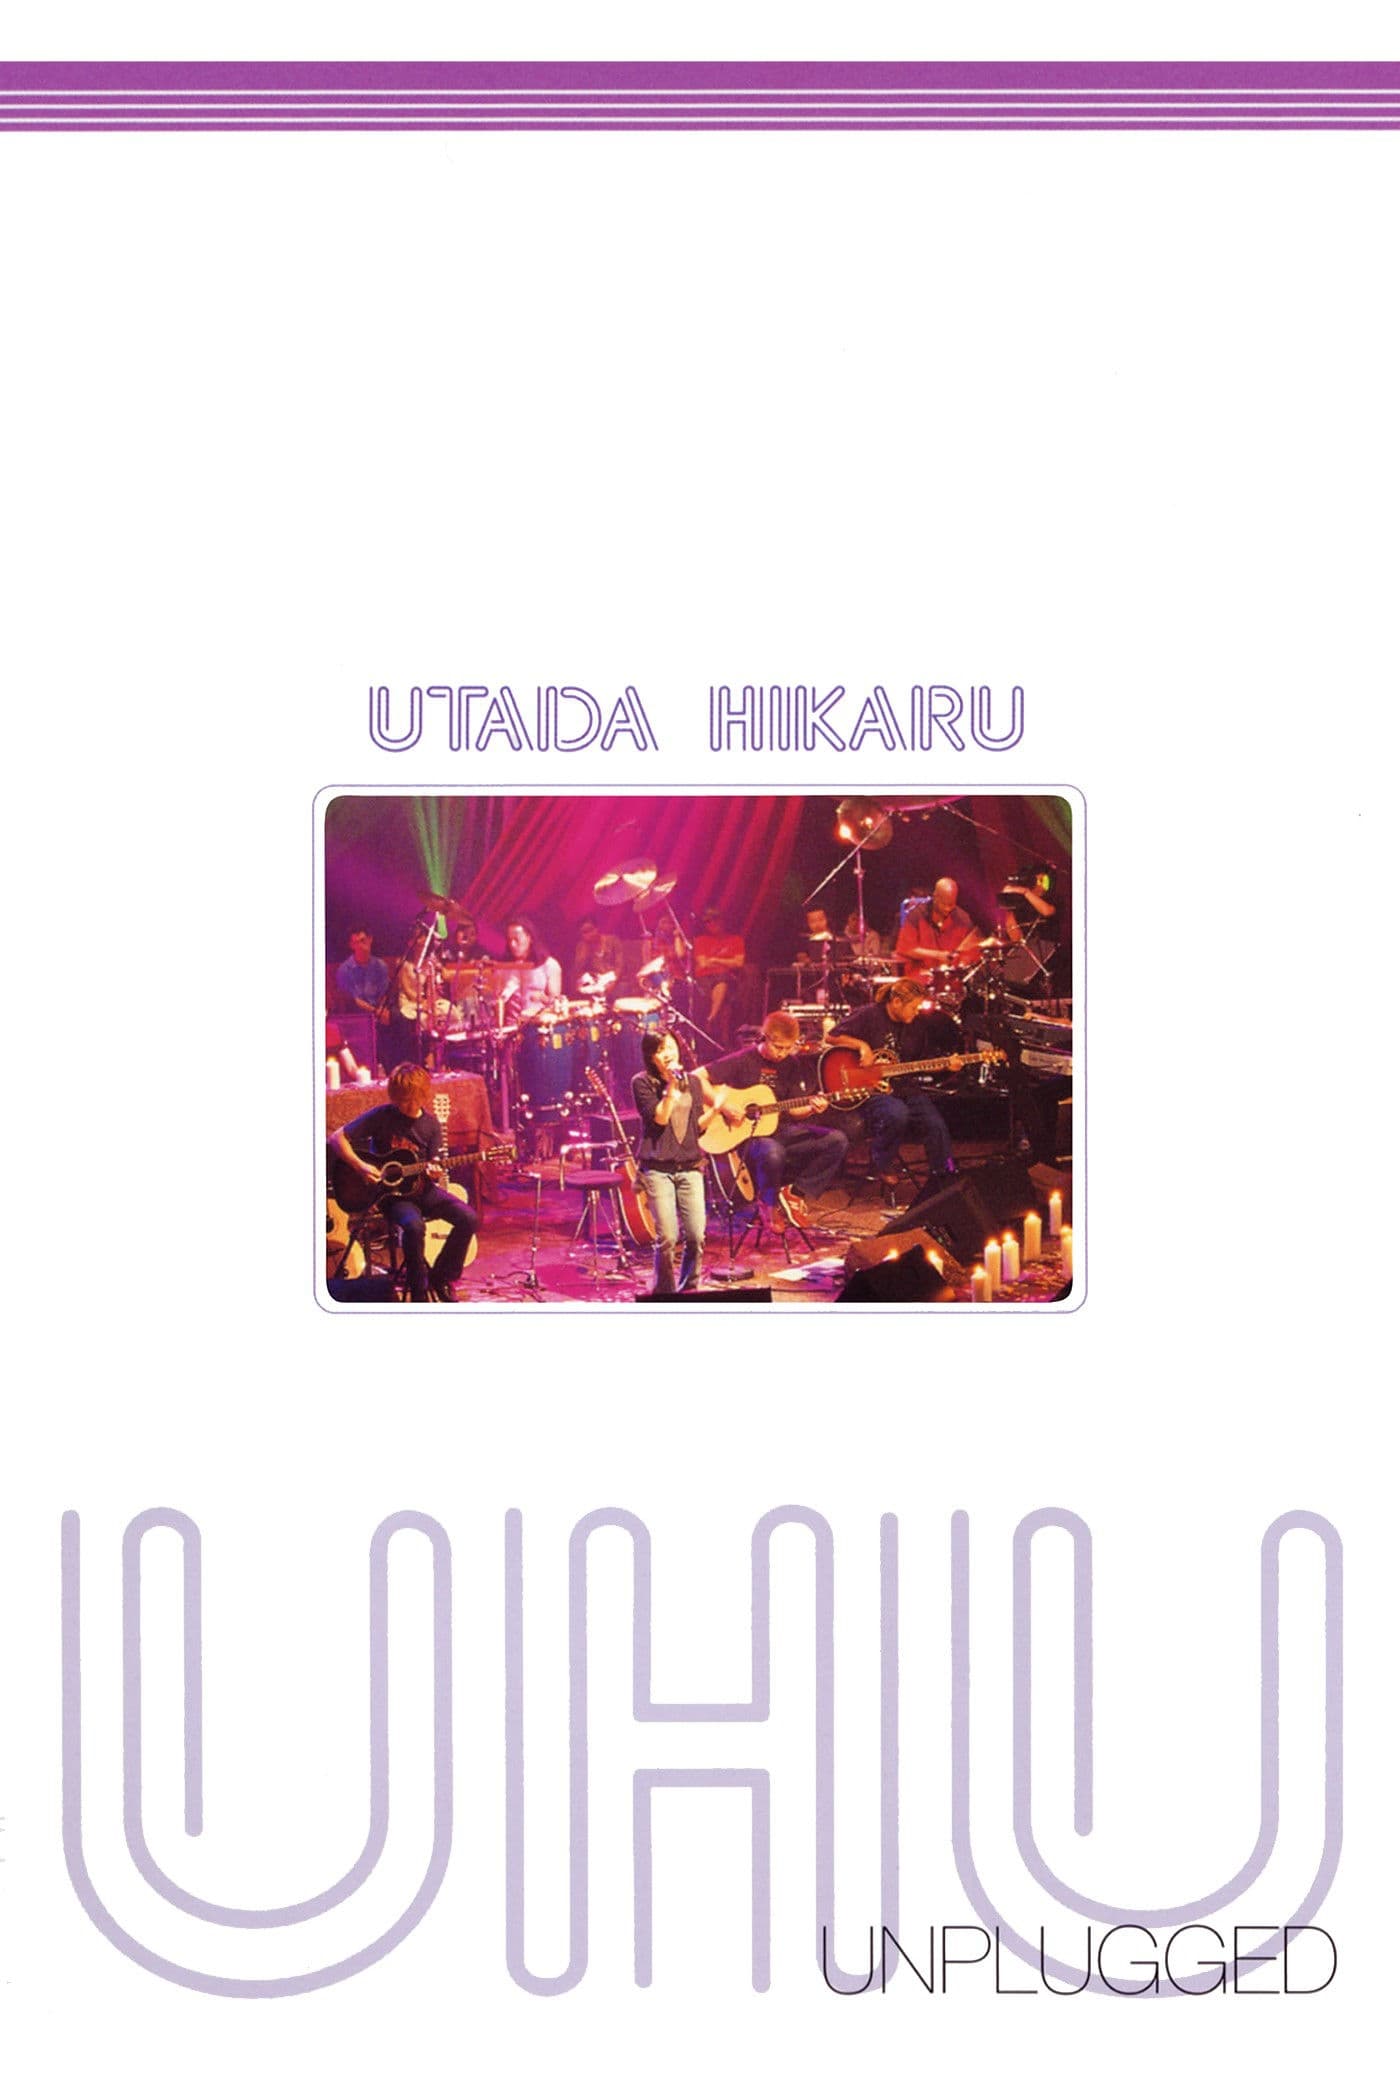 Utada Hikaru Unplugged